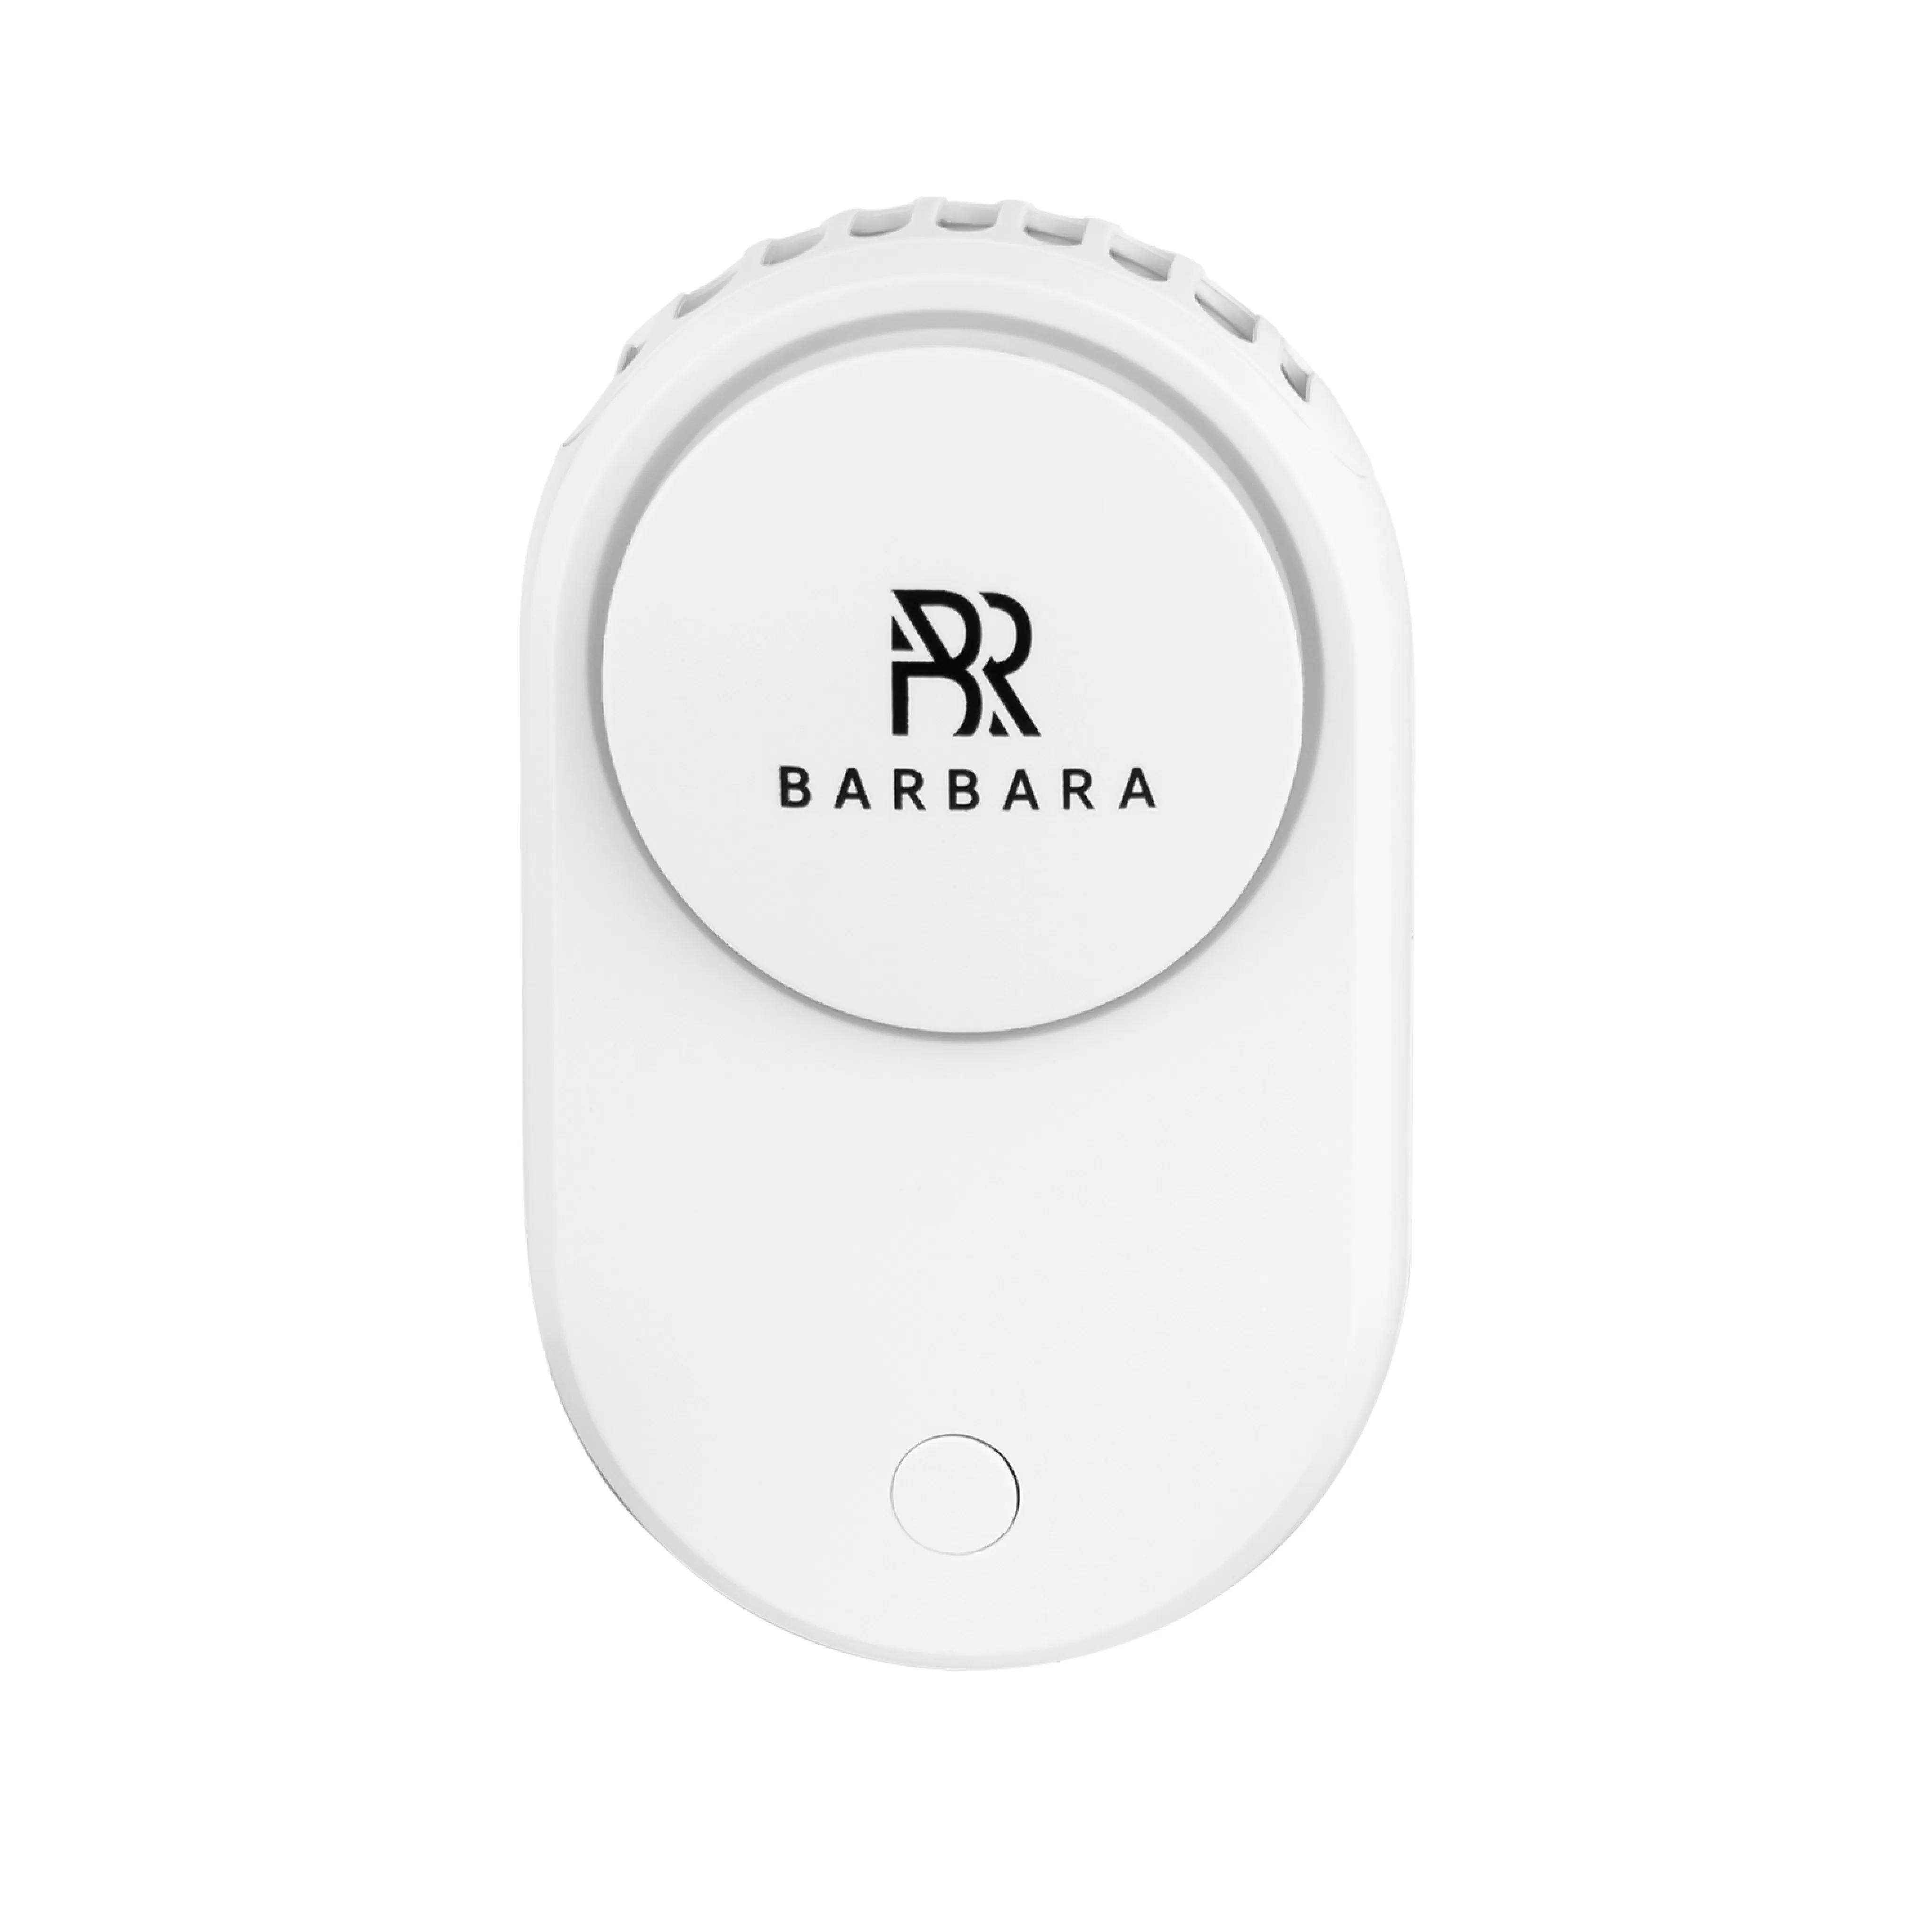 Вентилятор для сушки ресниц Barbara, USB, белый